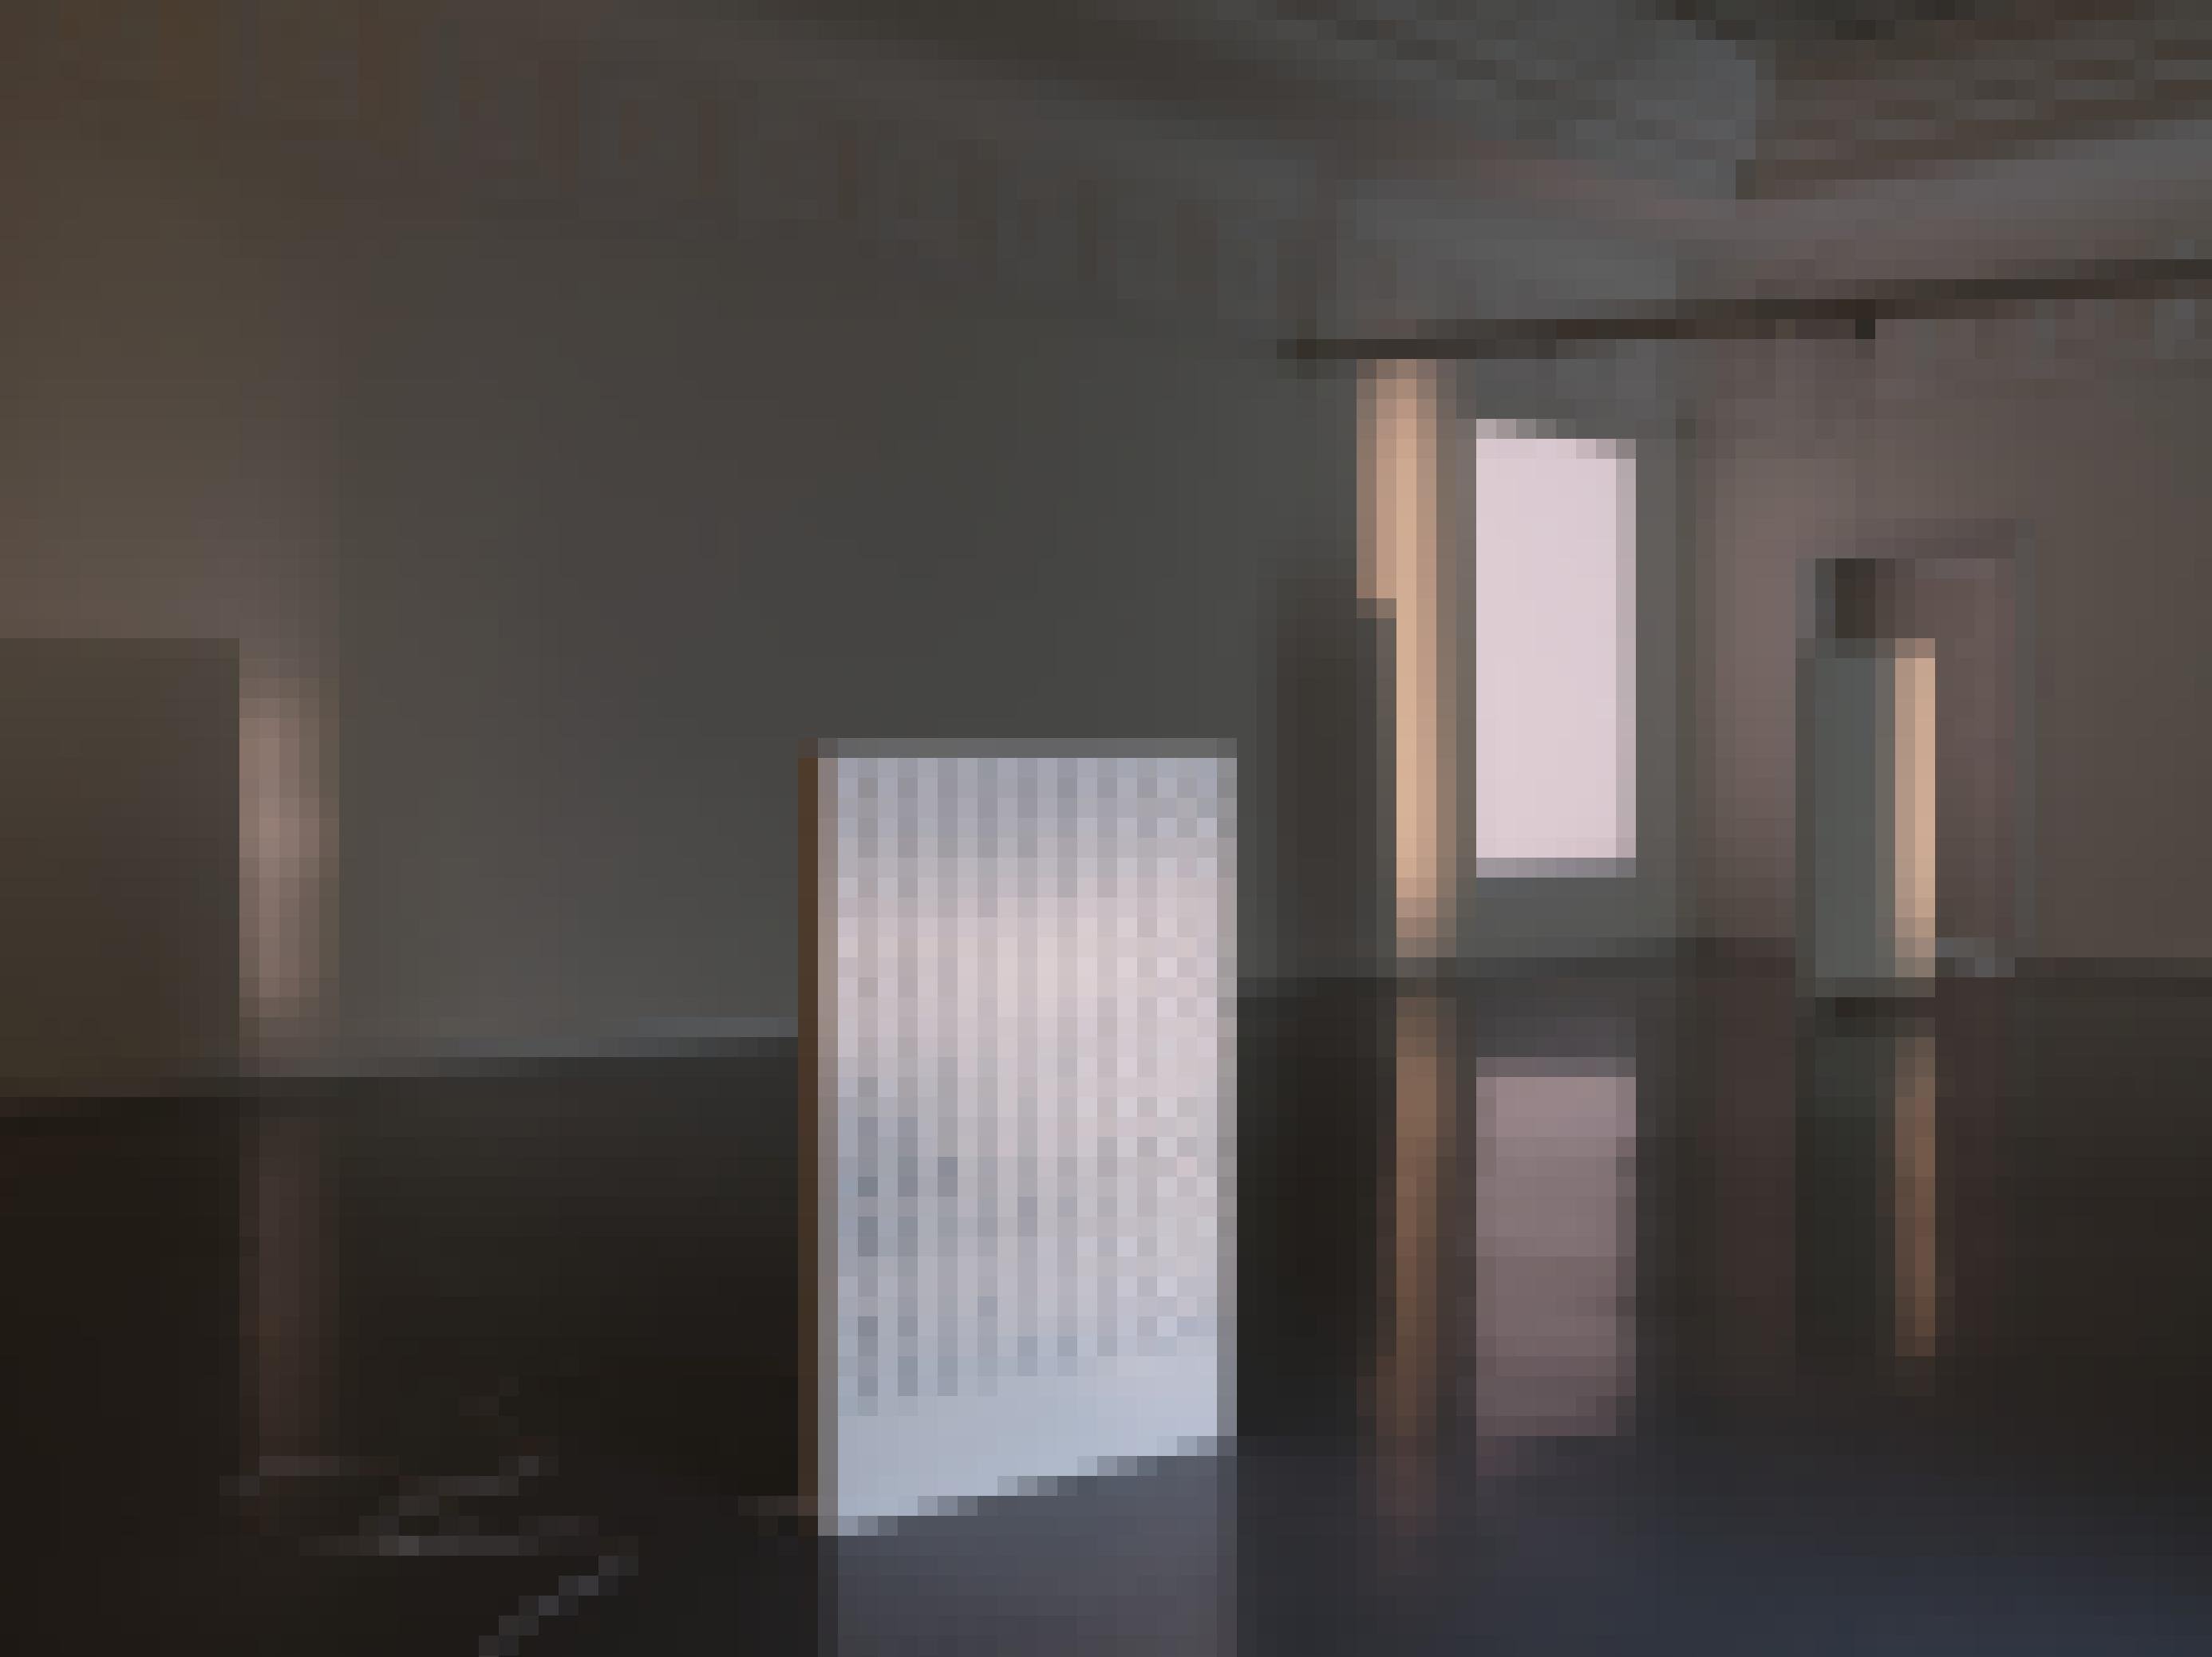 Lautsprecher als Skulptur platziert in einem lichten, leeren Ausstellungsraum.